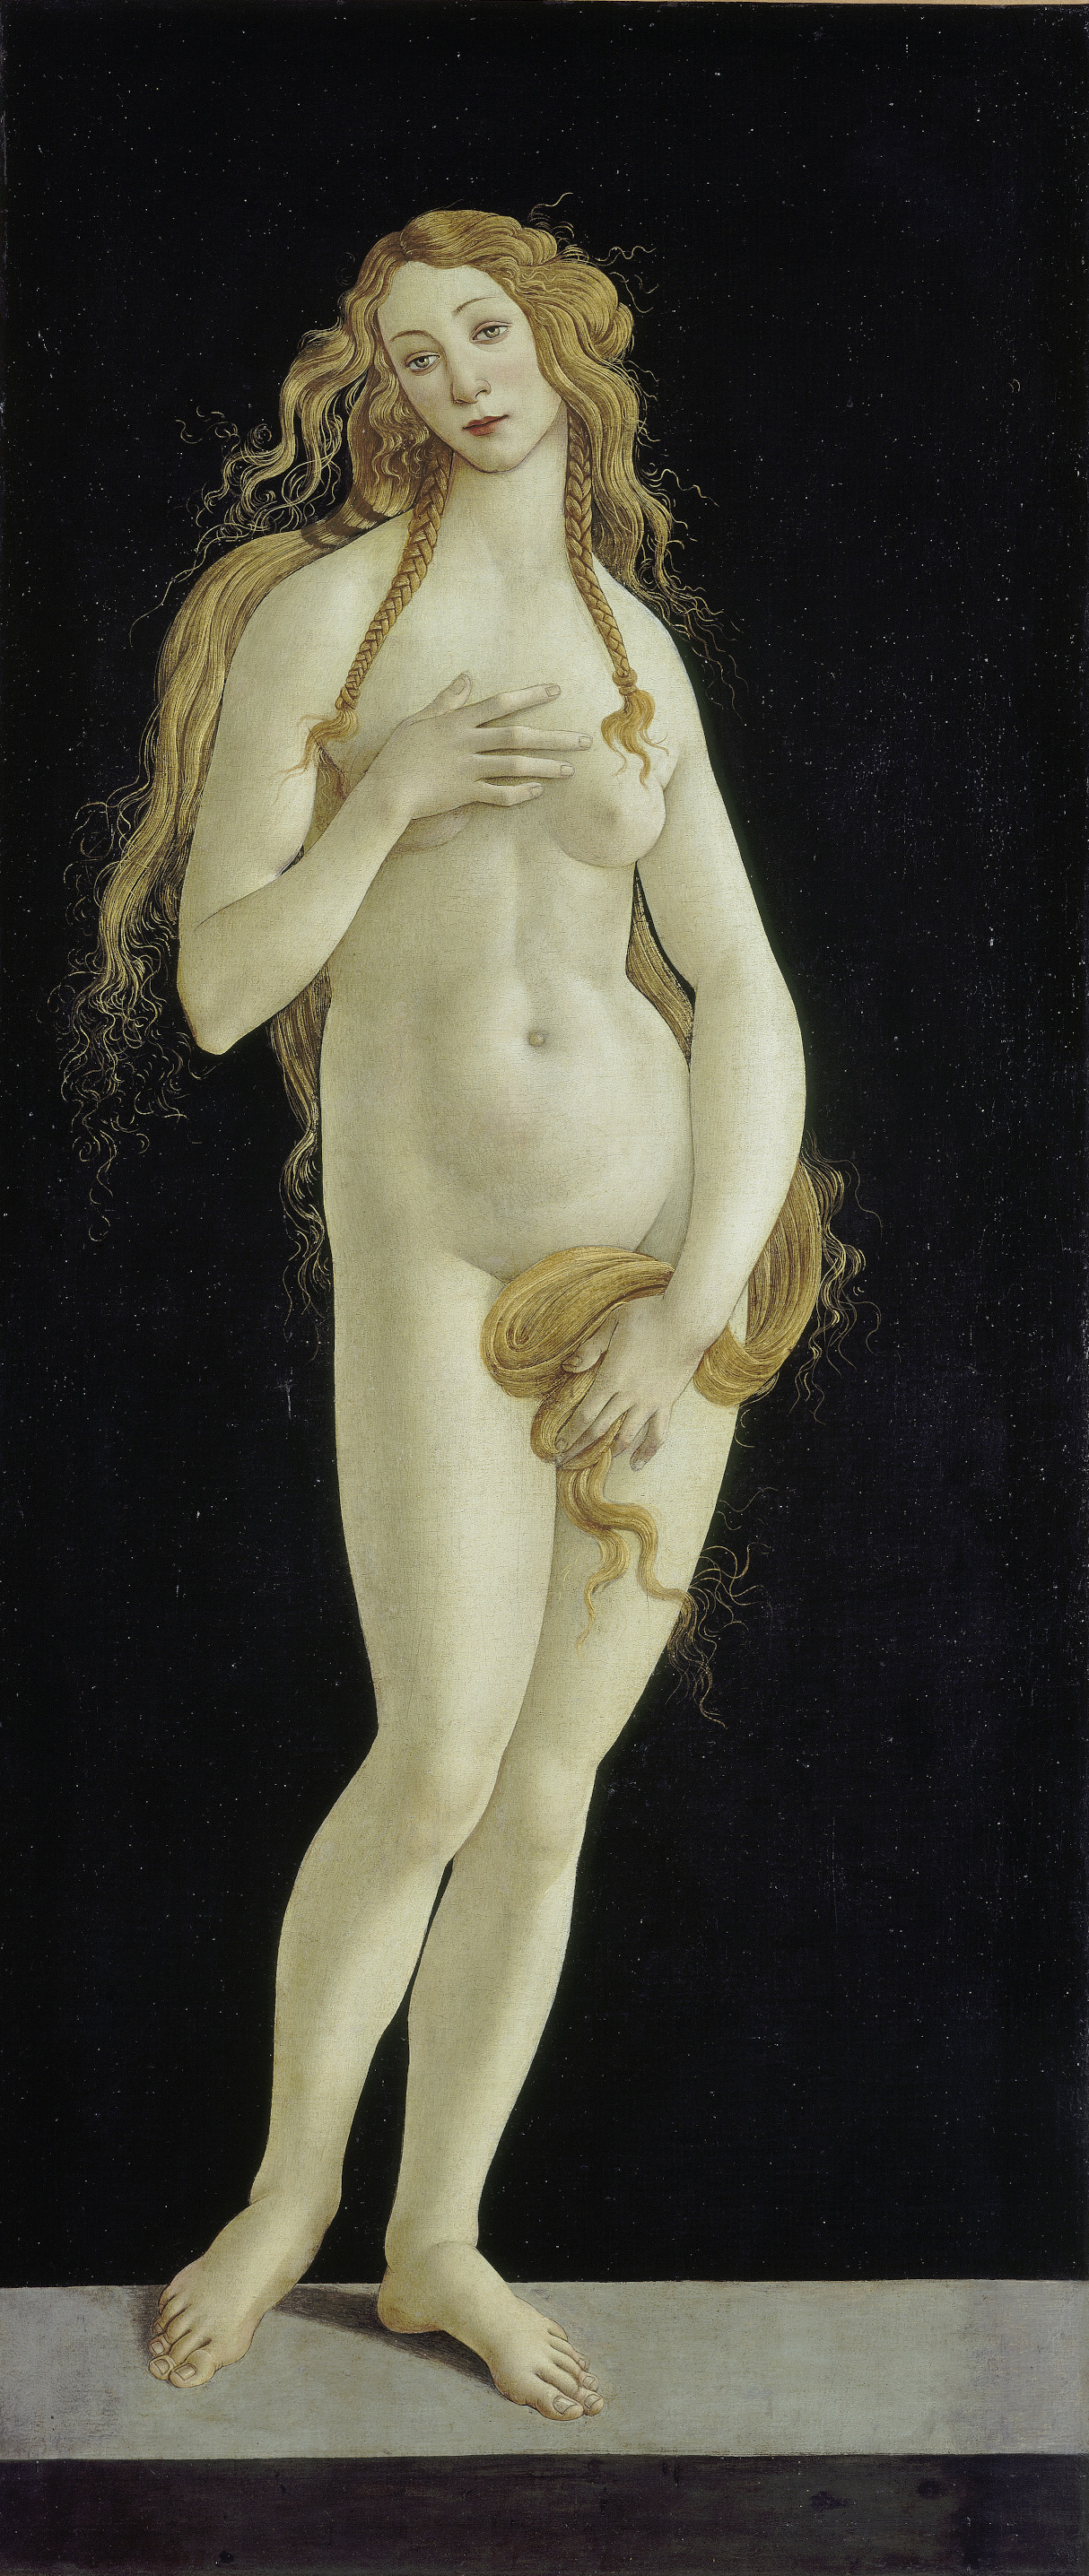 Venus by Sandro Botticelli (Atelier) - circa 1490 - 158.1 x 68.5 cm Gemäldegalerie